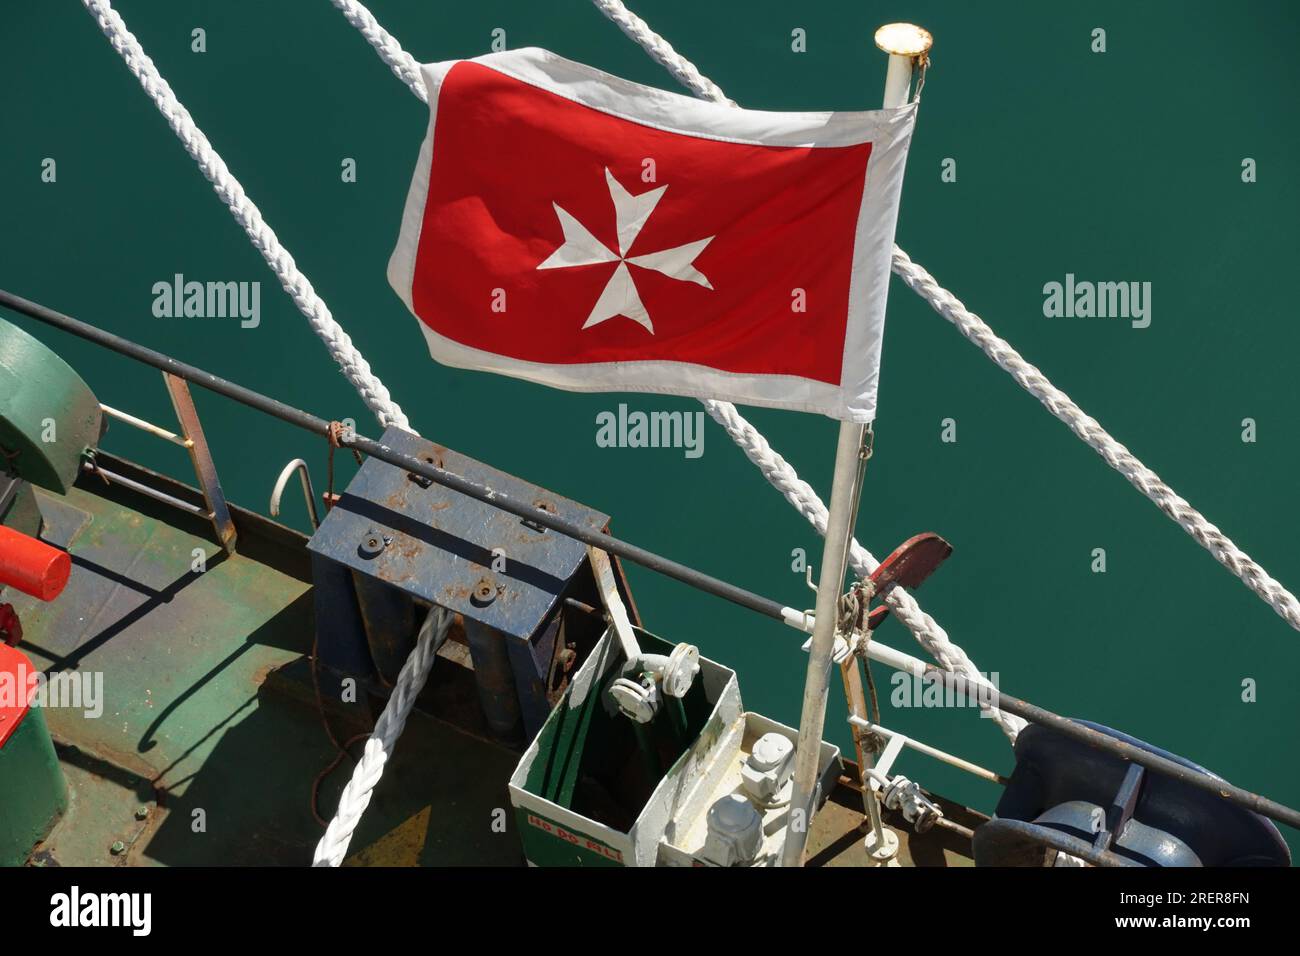 Bandiera di Malta, bandiera rossa con croce bianca, che sventola su una nave mercantile in parte a poppa. Foto Stock